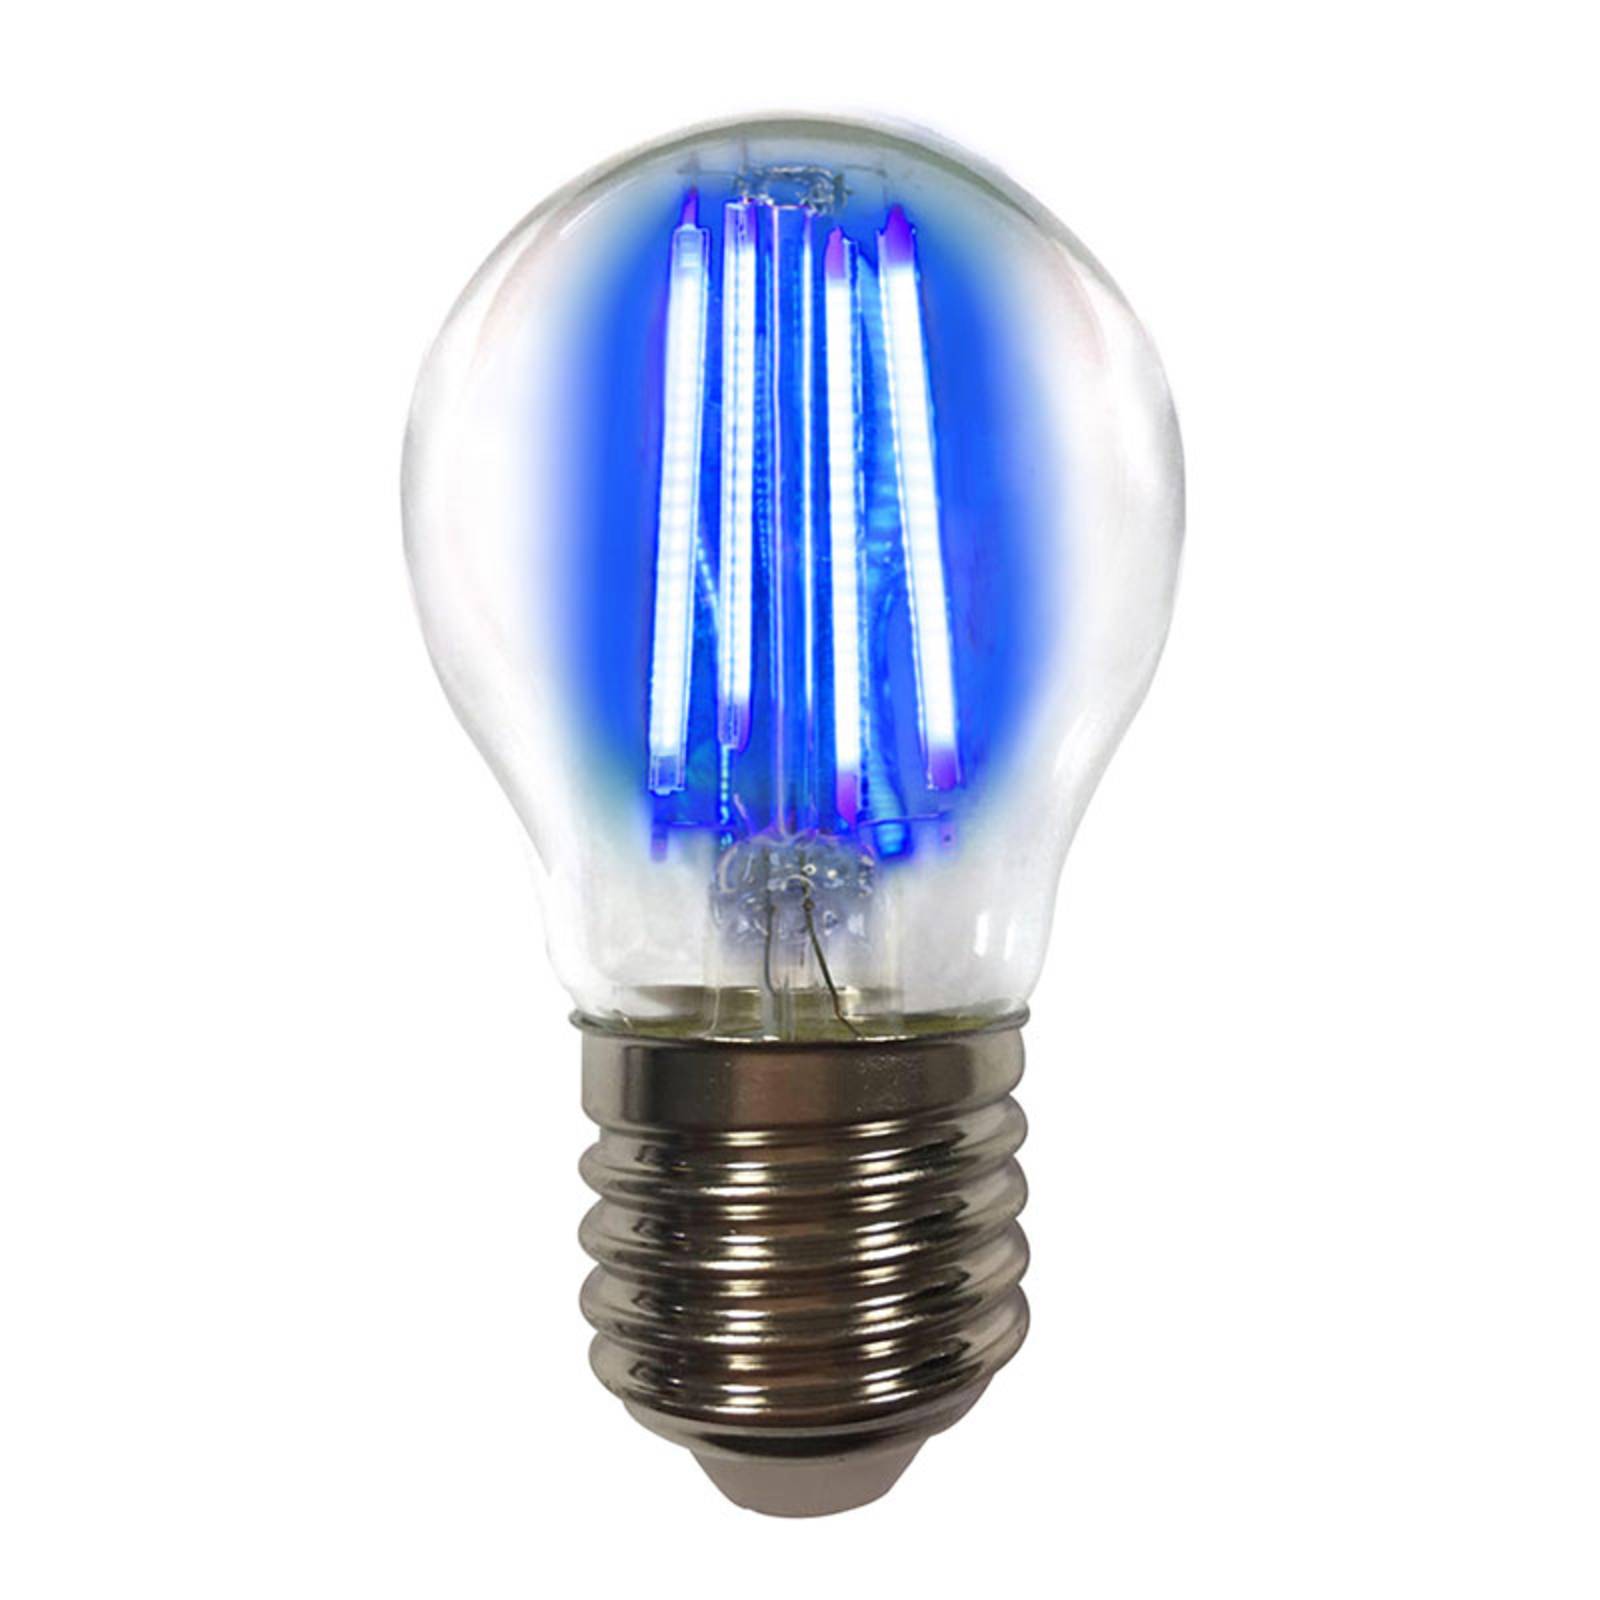 LED-pære E27 4W filament blå farvet lys